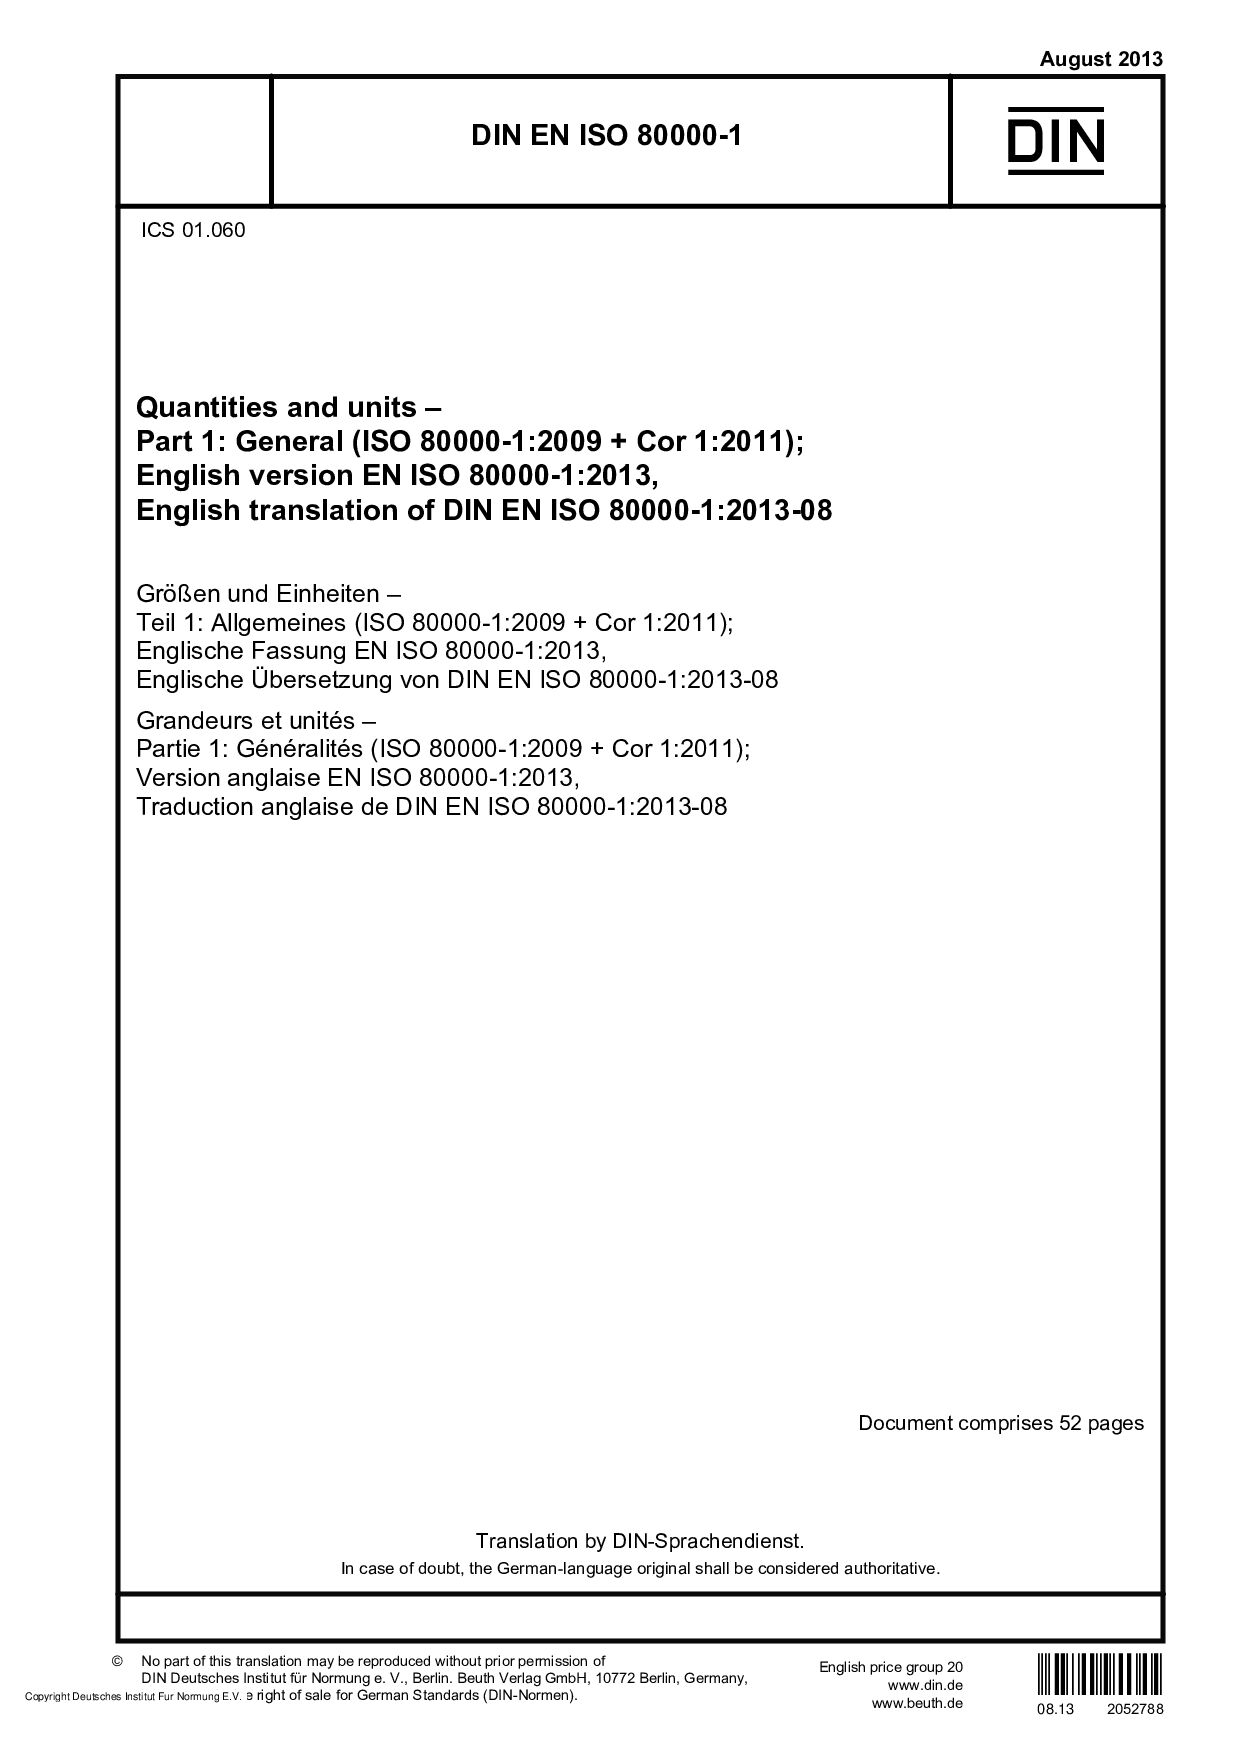 DIN EN ISO 80000-1:2013